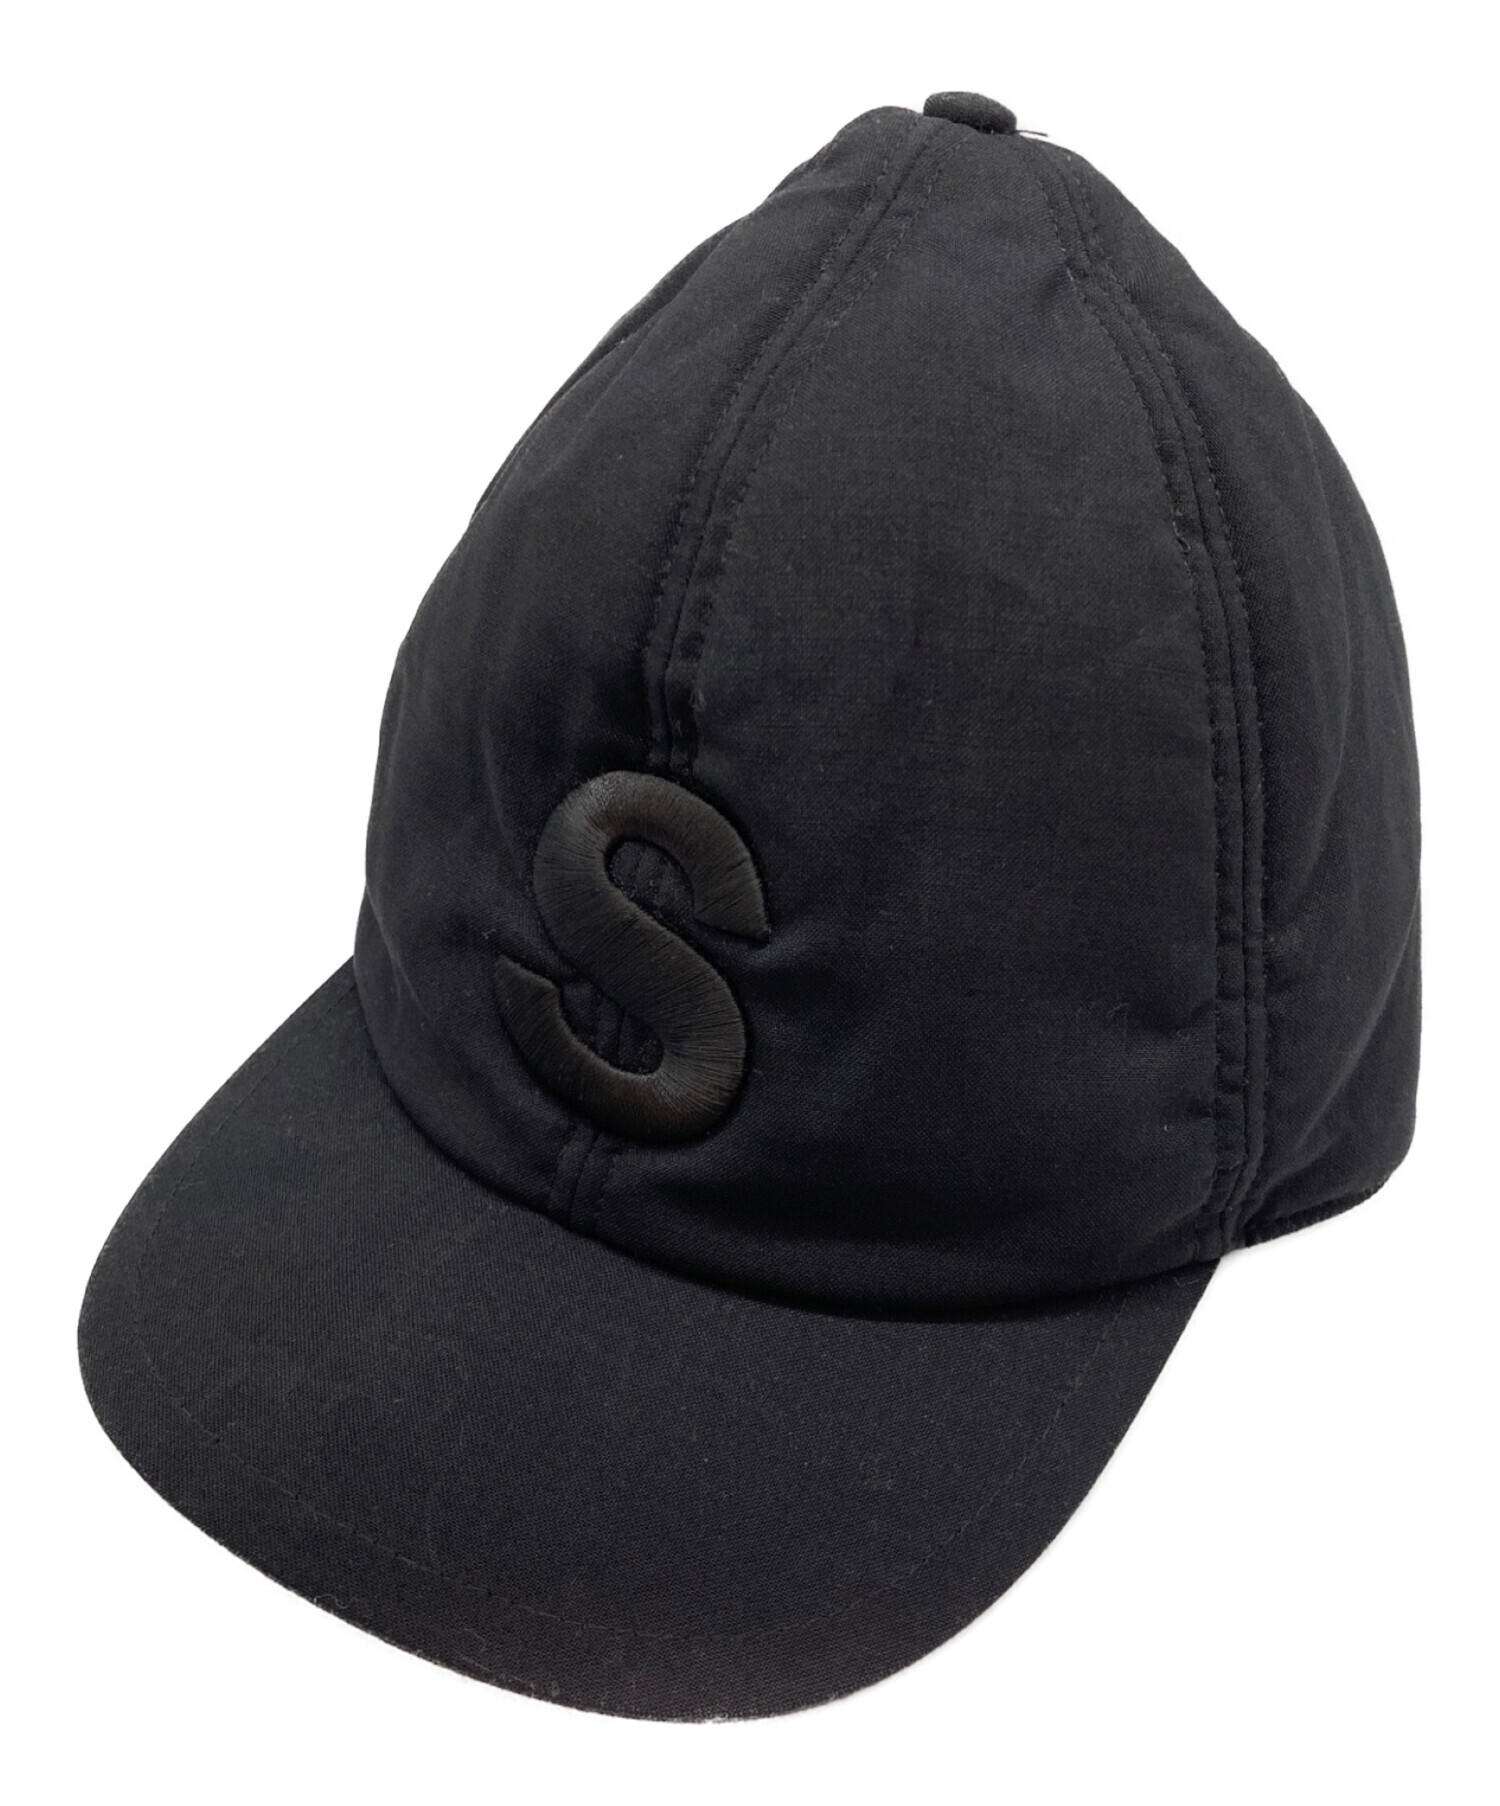 新品 sacai kaws メルトン キャップ melton cap サイズ 1 - 帽子